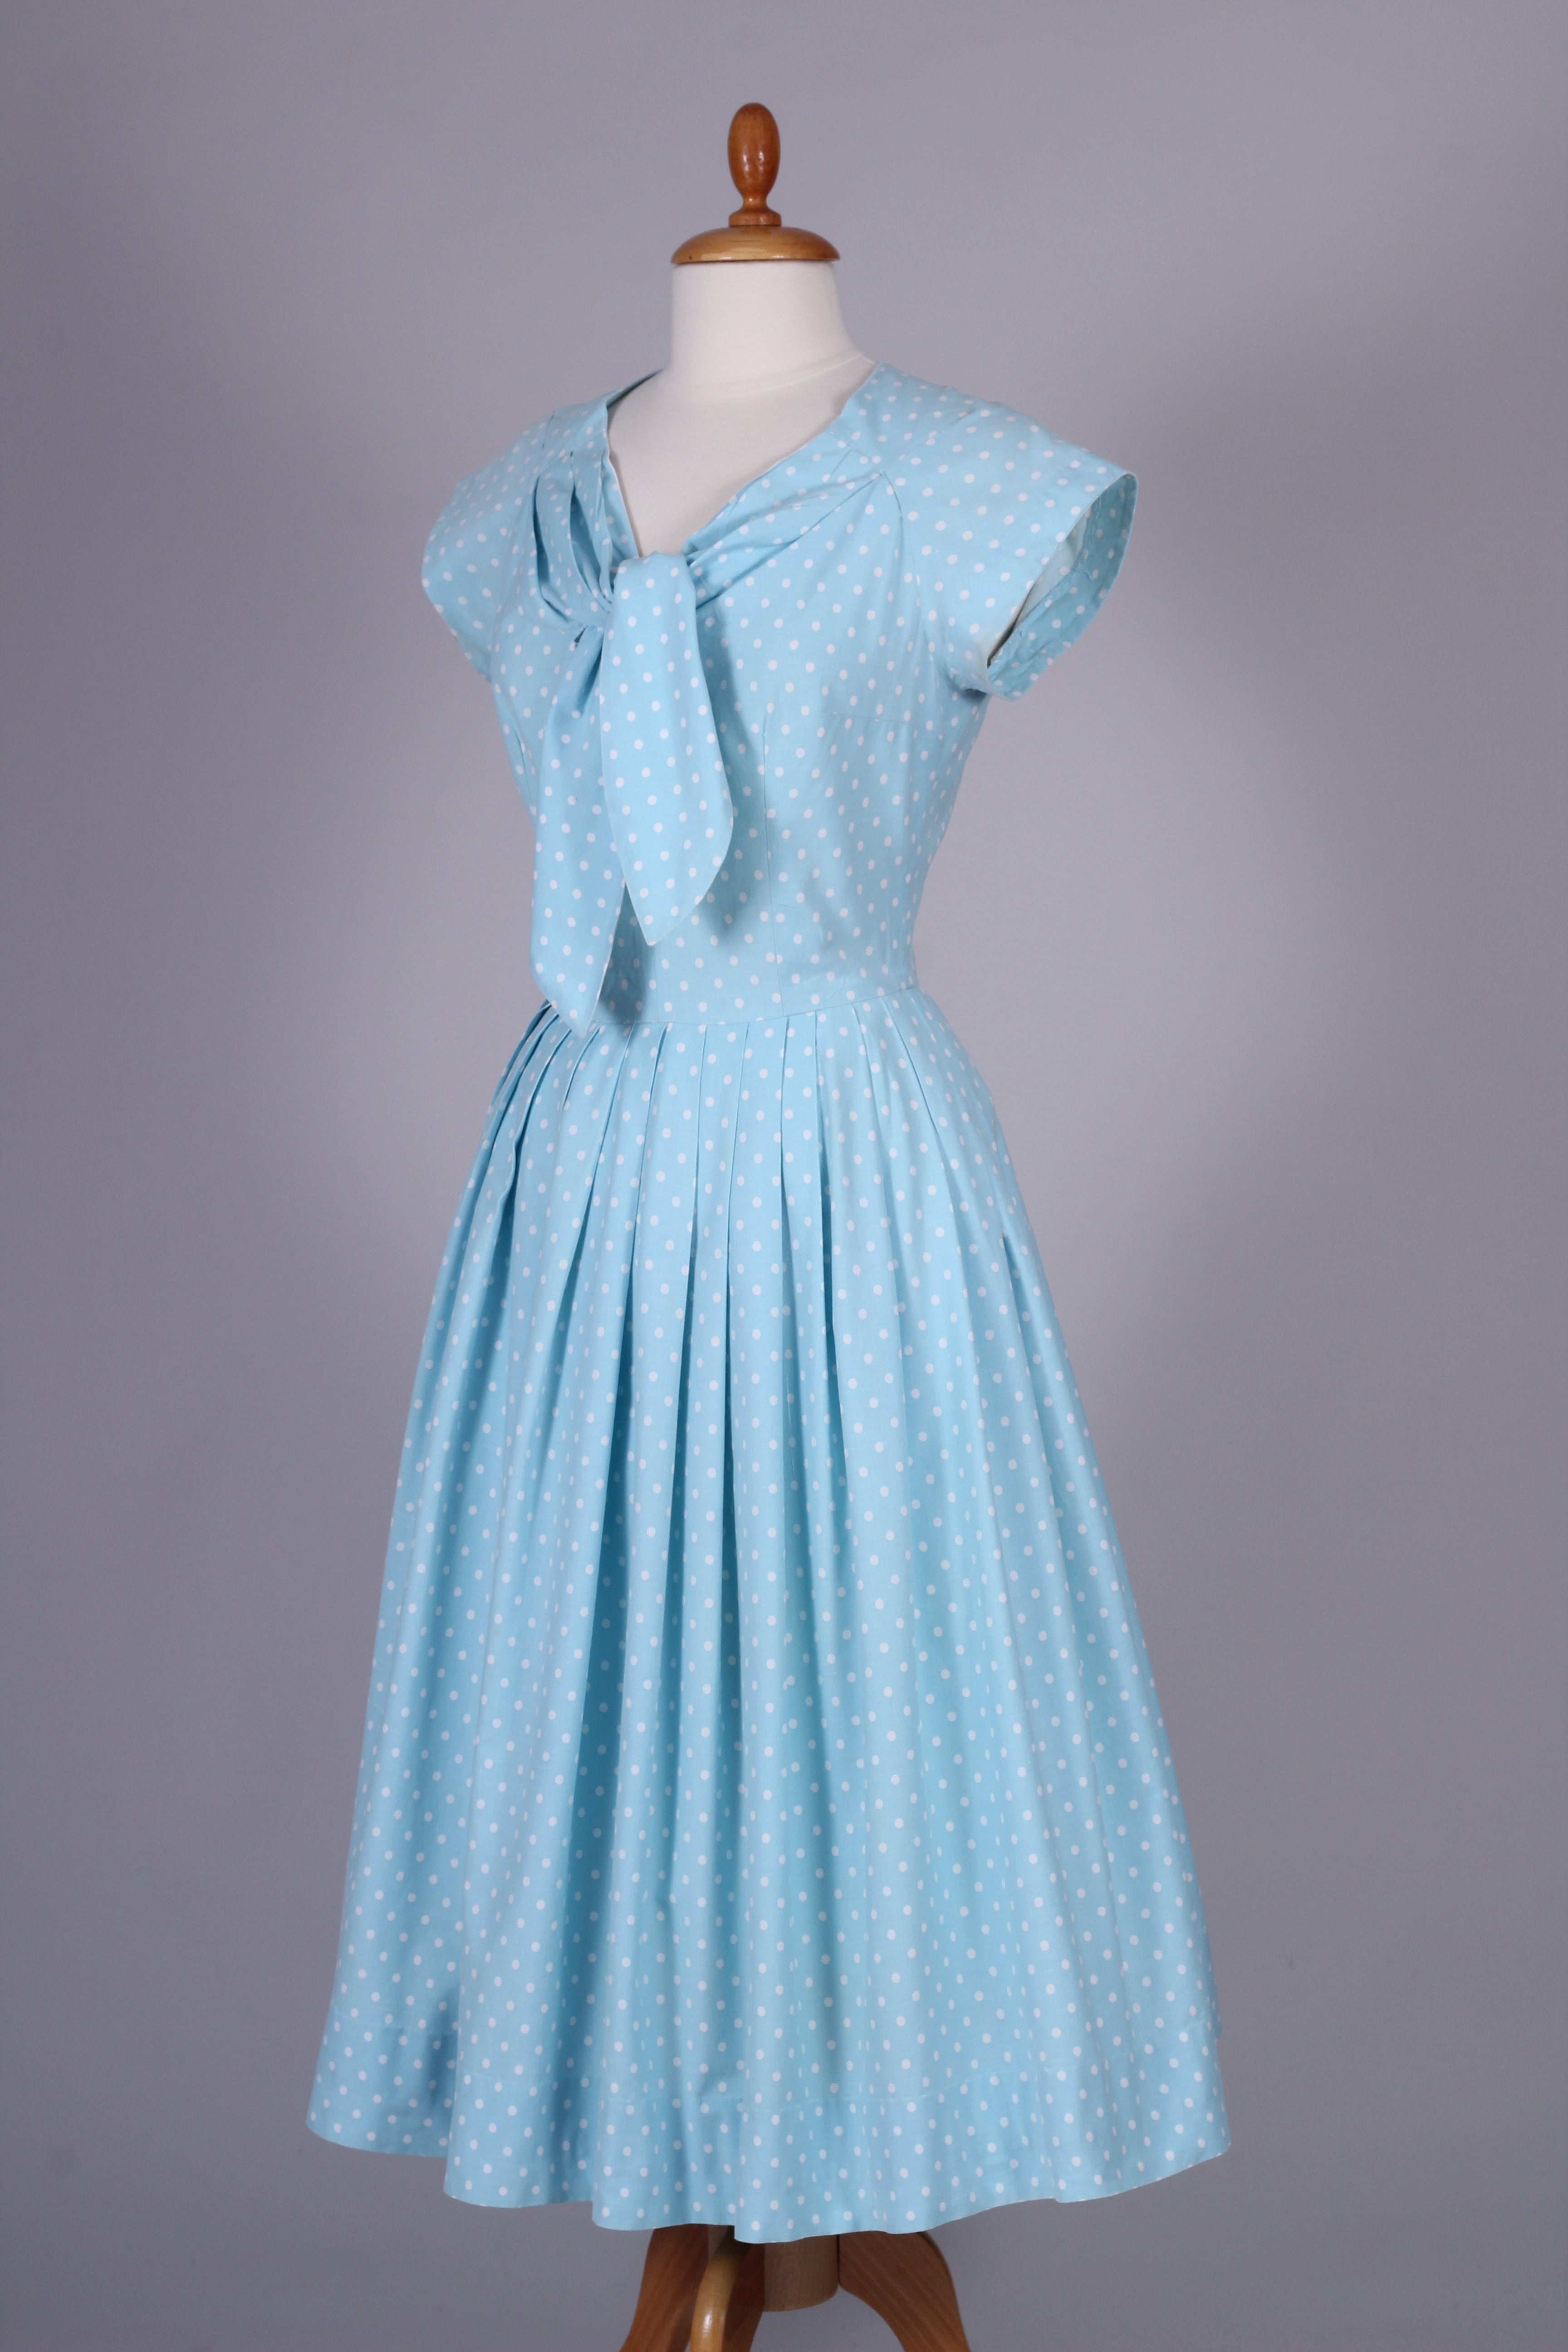 Horrockses Fashion sommerkjole 1950. S